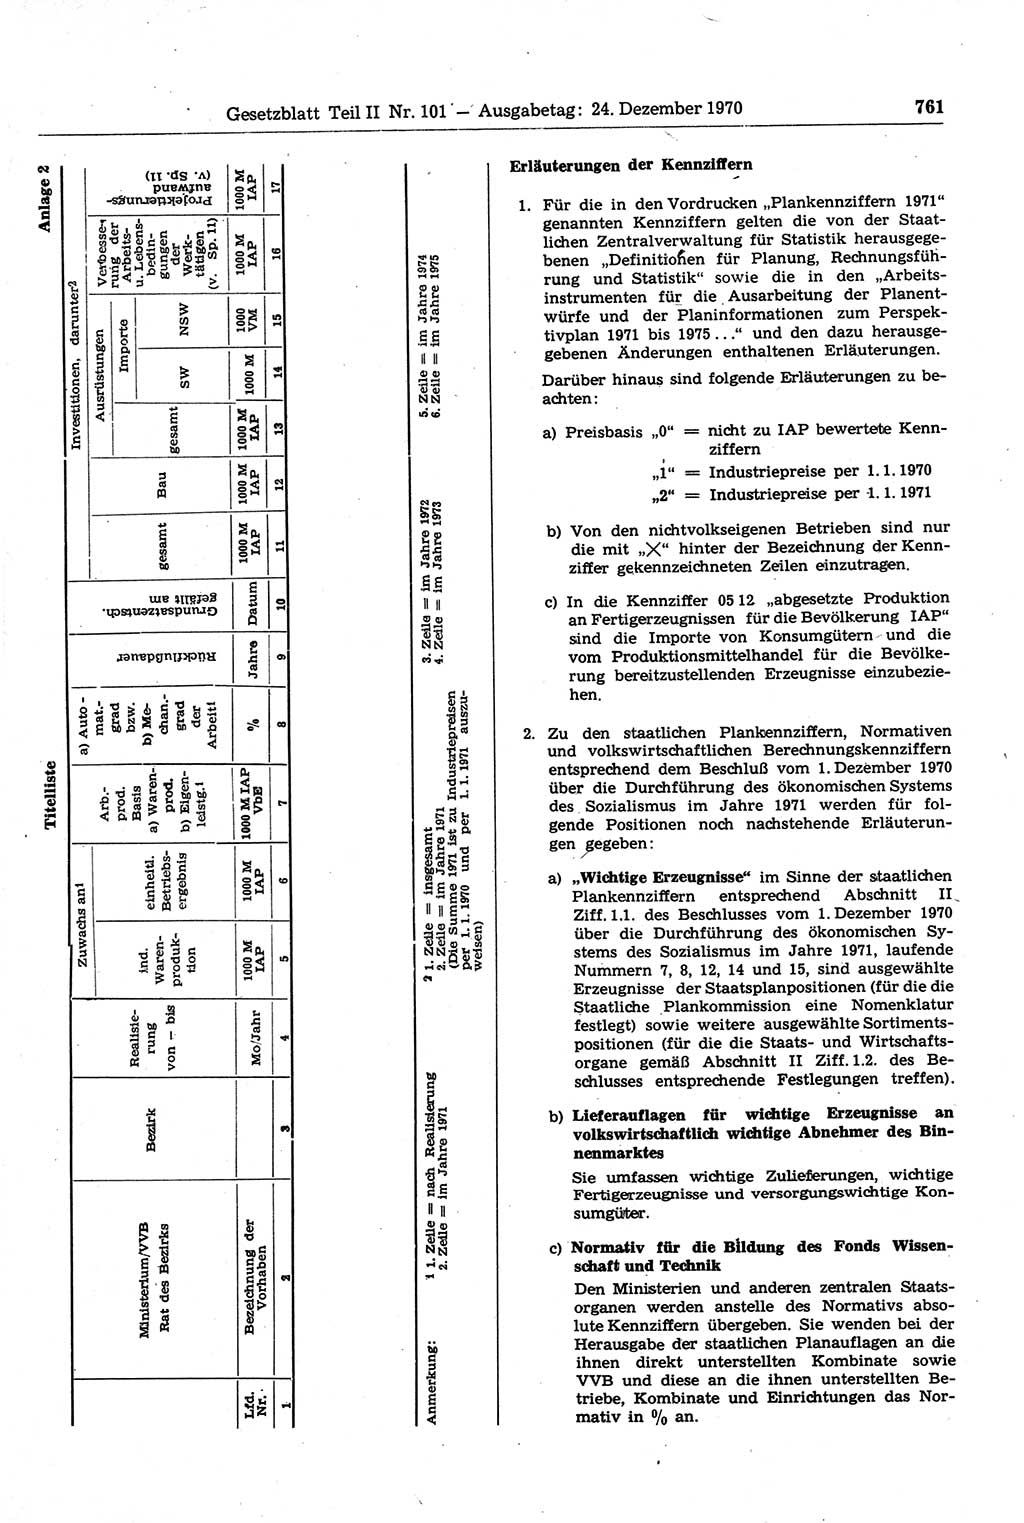 Gesetzblatt (GBl.) der Deutschen Demokratischen Republik (DDR) Teil ⅠⅠ 1970, Seite 761 (GBl. DDR ⅠⅠ 1970, S. 761)